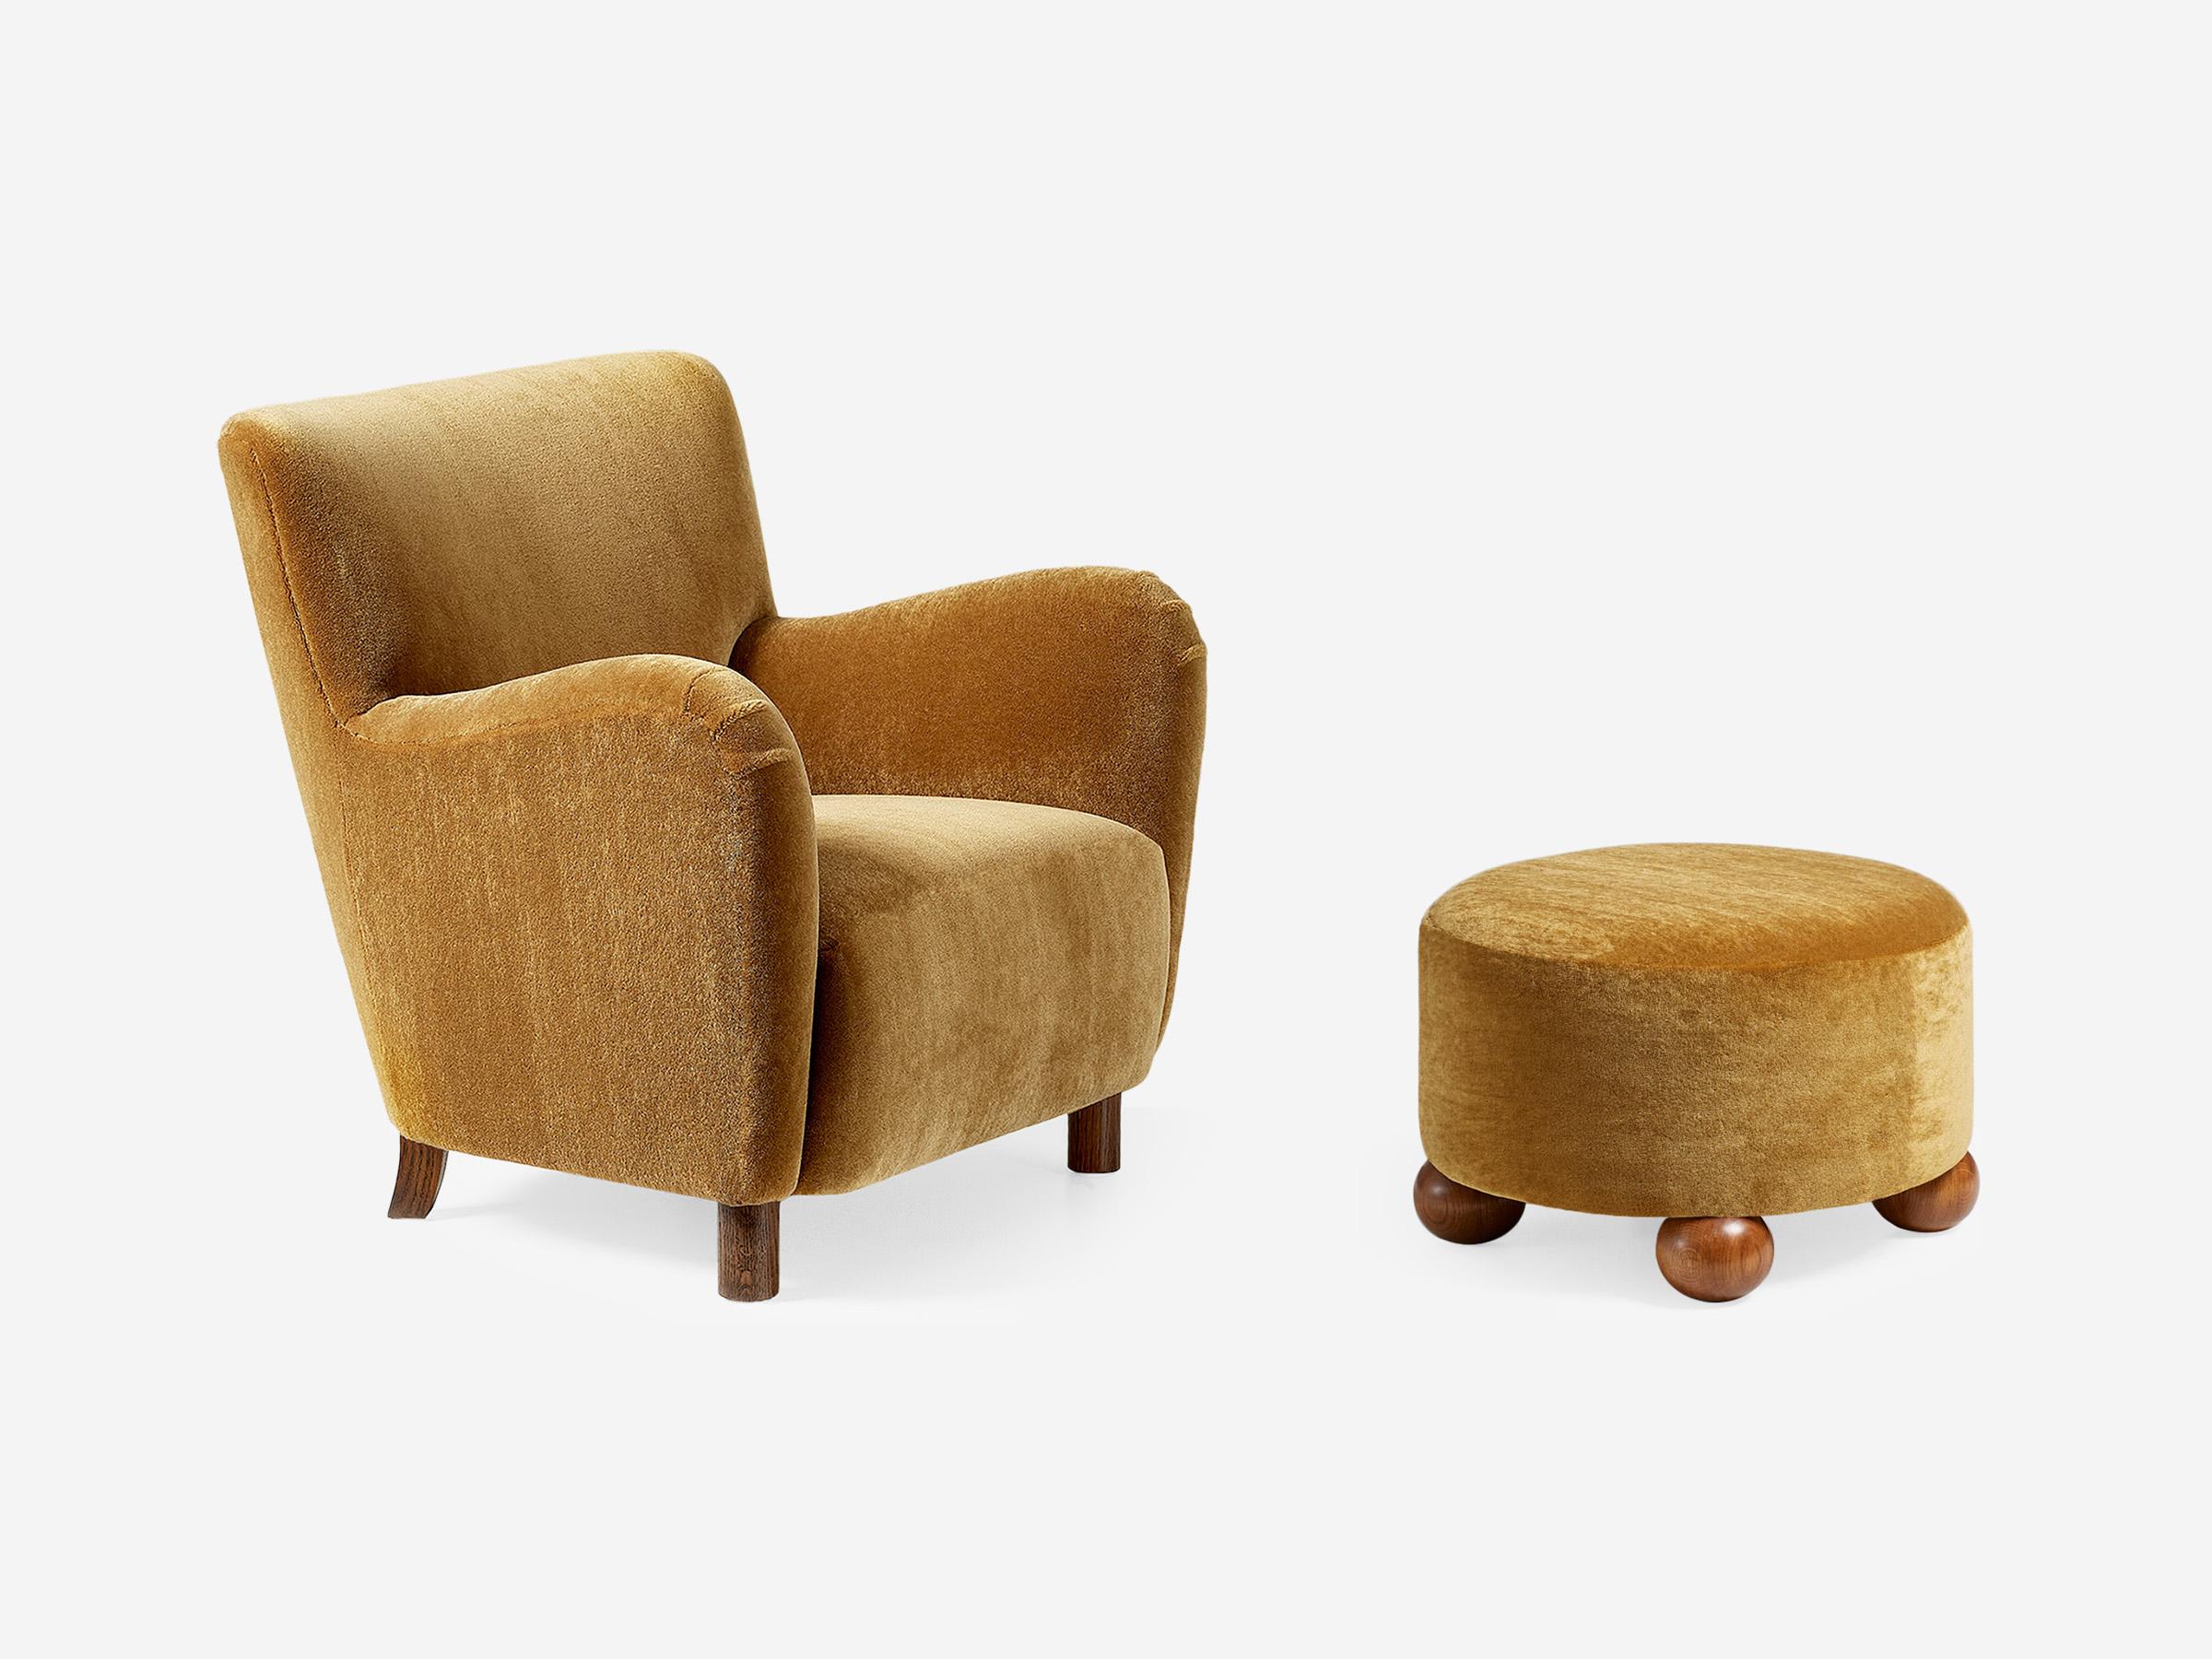 Dagmar - 54 Chair & Luupo Ottoman

Le 54 Lounge Chair est à la croisée des chemins entre l'esthétique traditionnelle et l'esthétique contemporaine, ce qui lui permet de s'adapter à un large éventail d'intérieurs. Développée par l'équipe de Dagmar